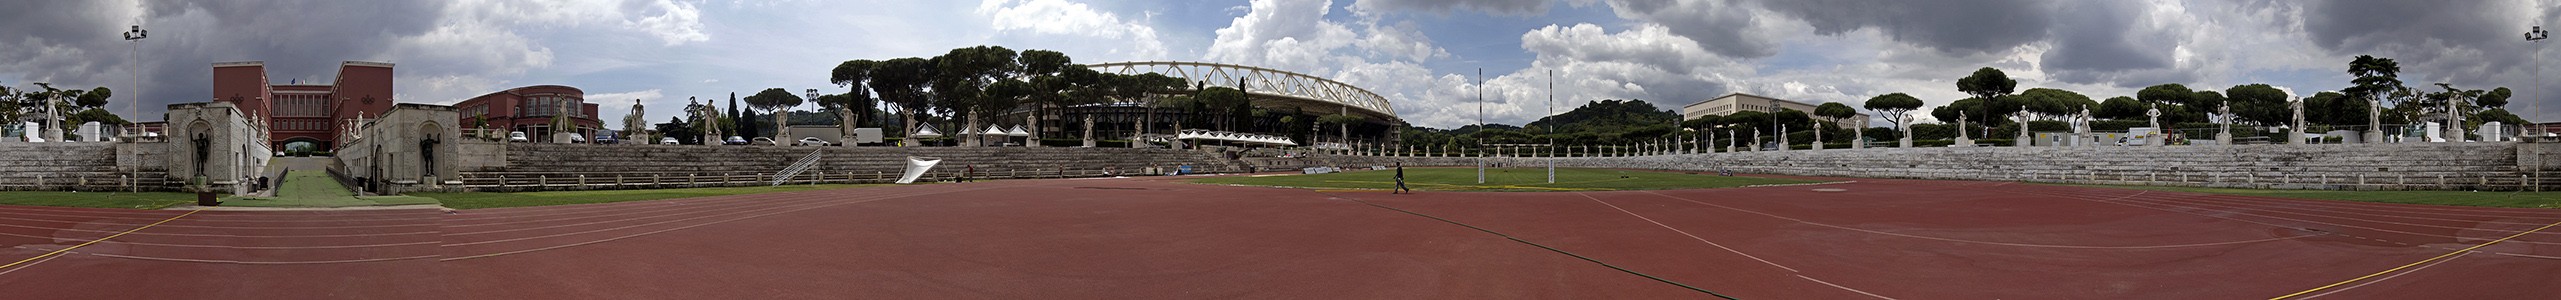 Foro Italico: Stadio dei Marmi Rom